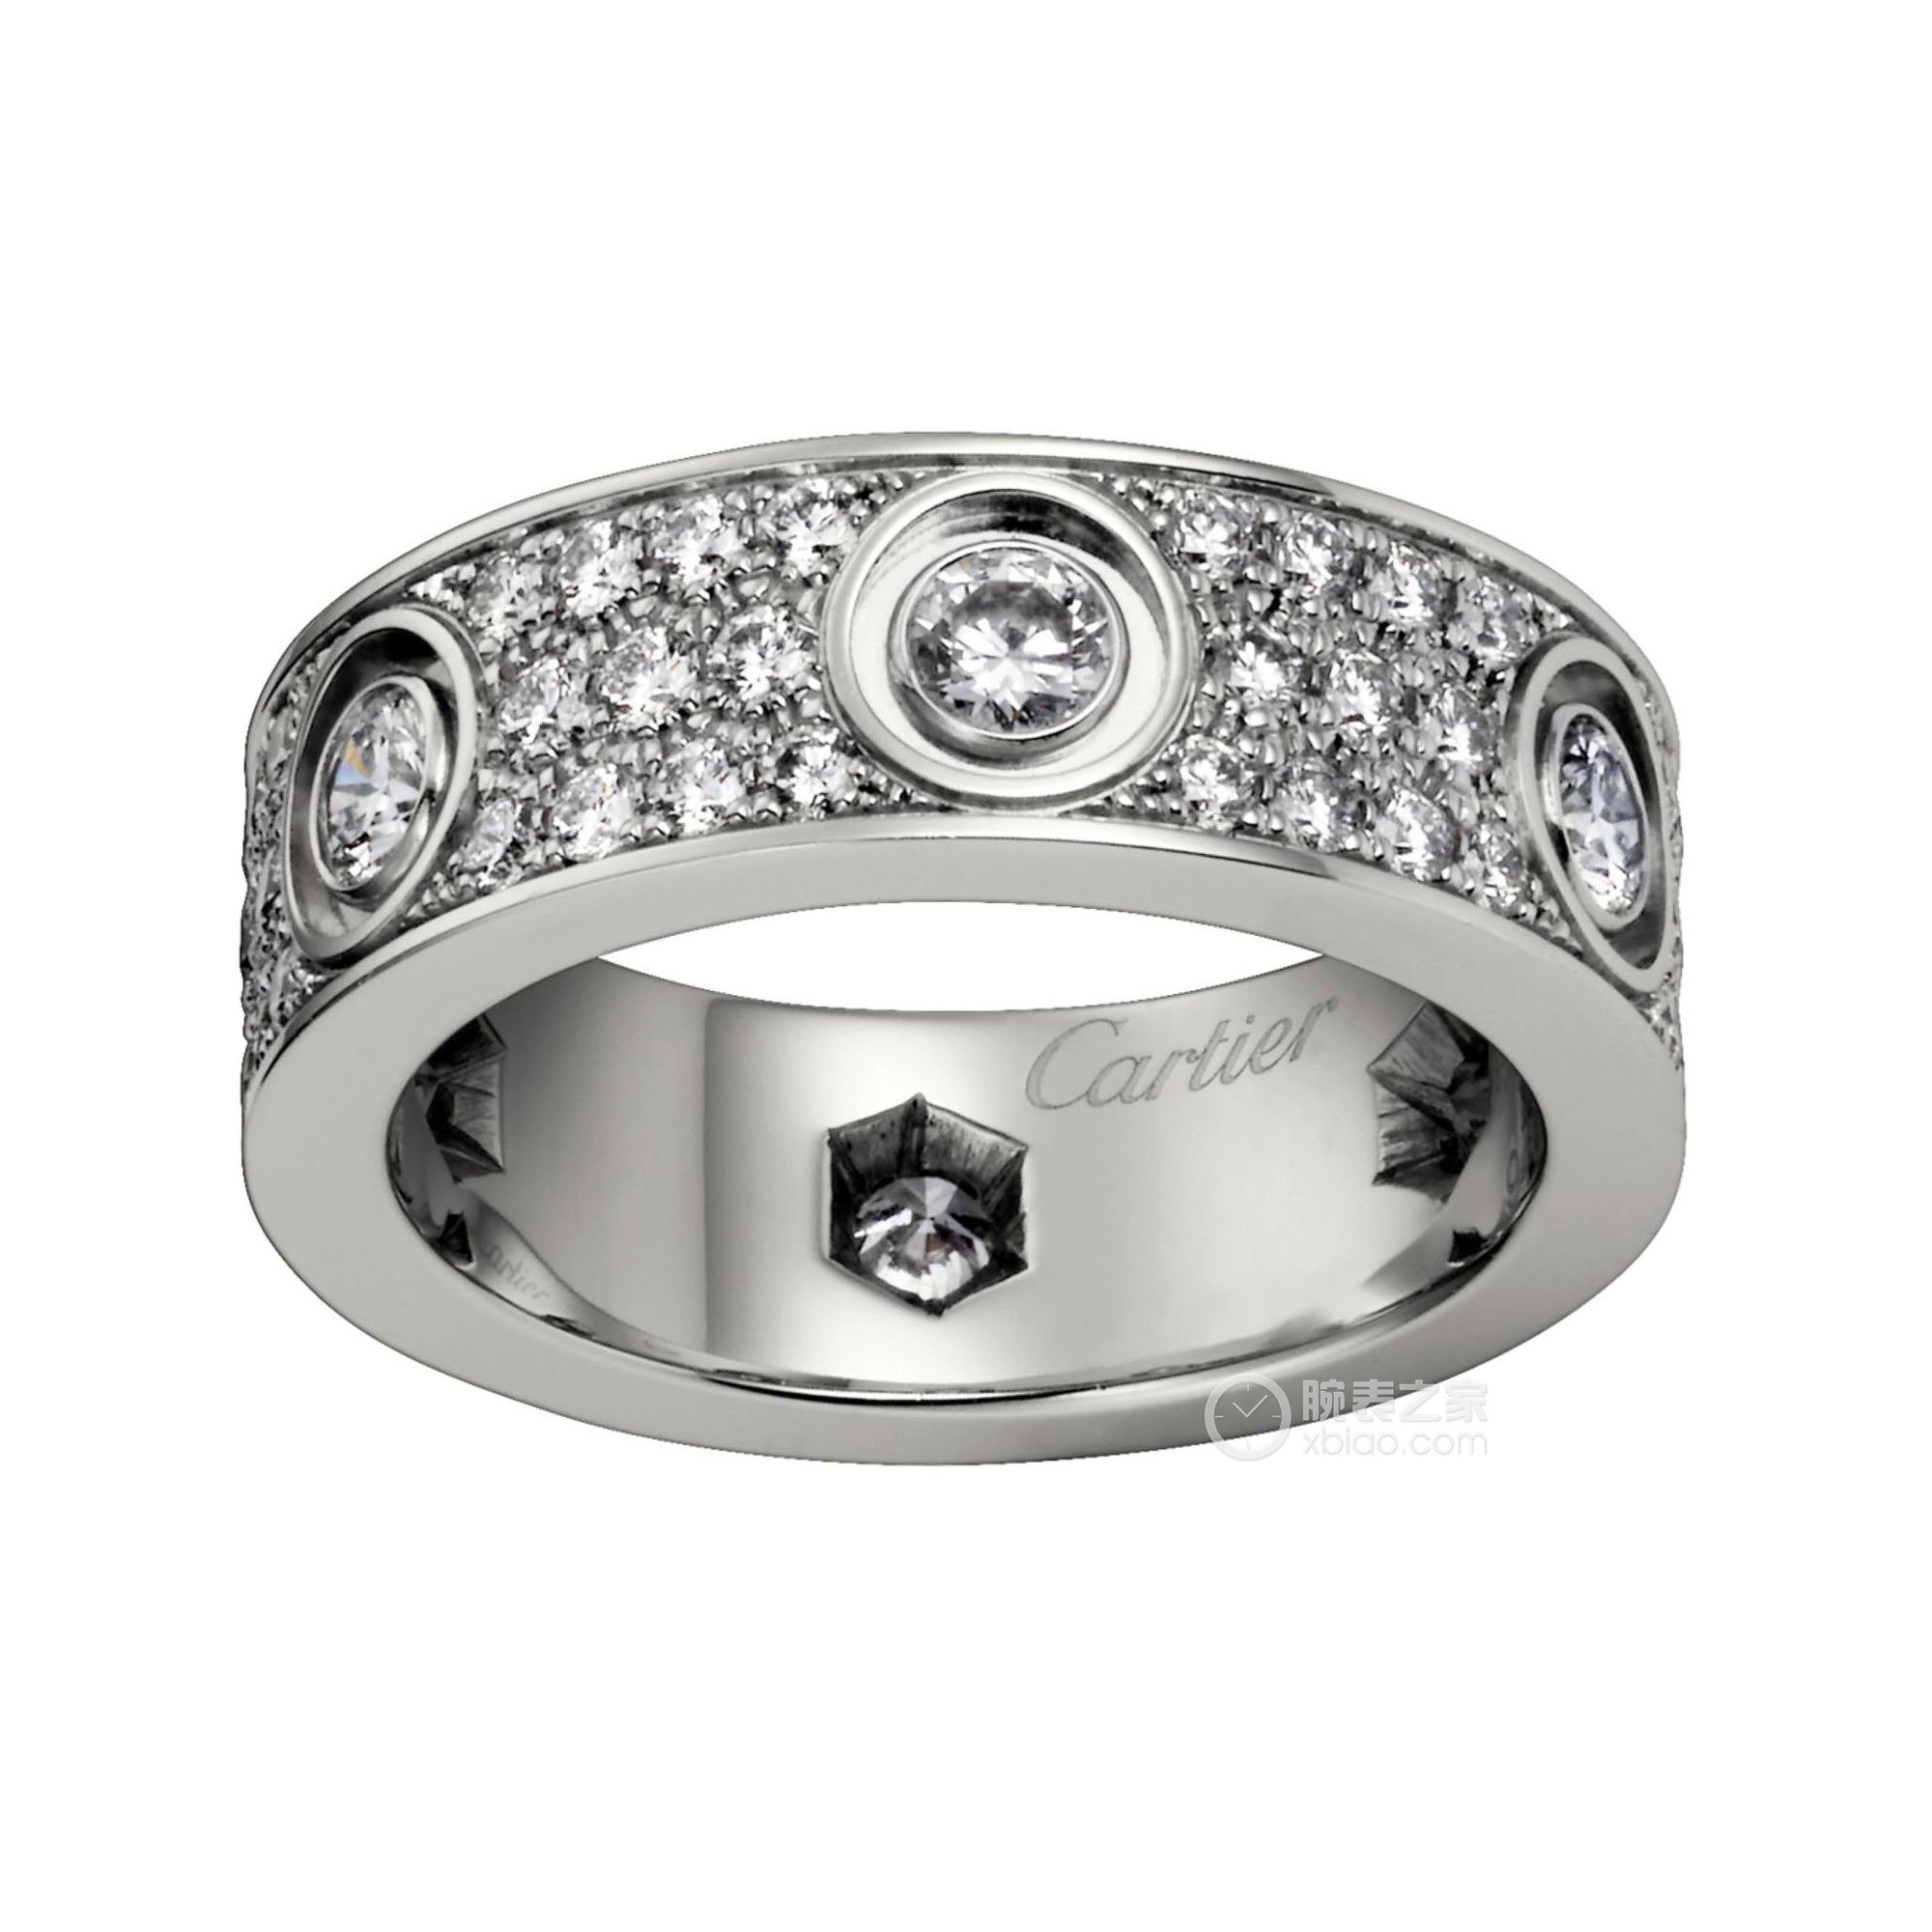 B4098200 - C de Cartier结婚戒指 铂金 - 铂金，钻石 - 卡地亚